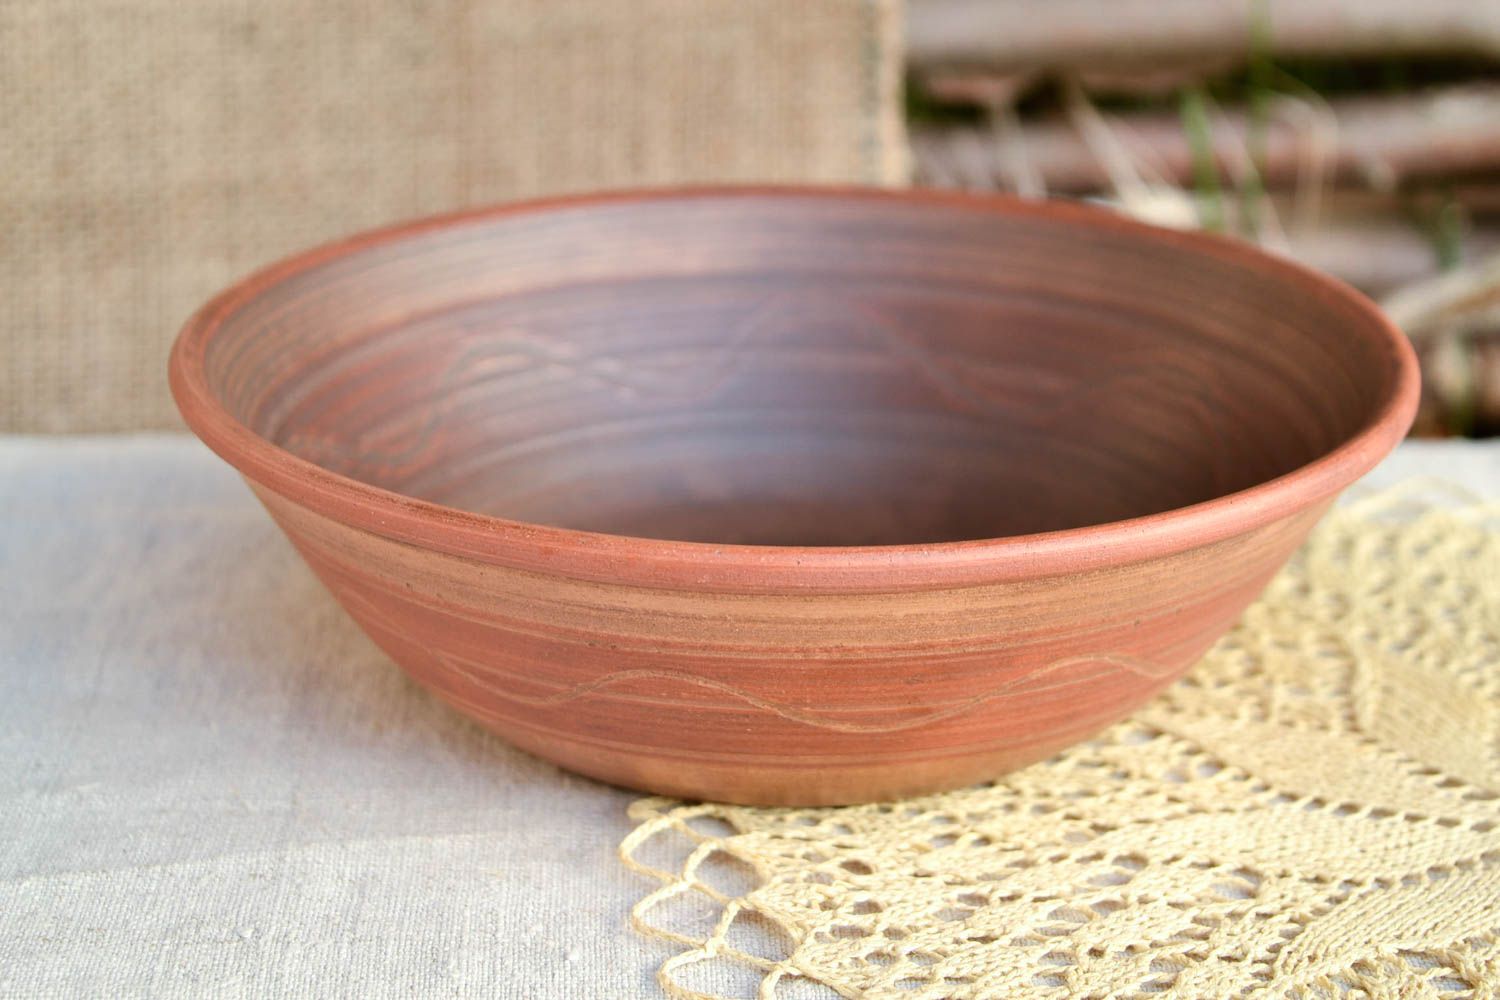 Handmade ceramic bowl ceramic plate stoneware dinnerware kitchen decor photo 1